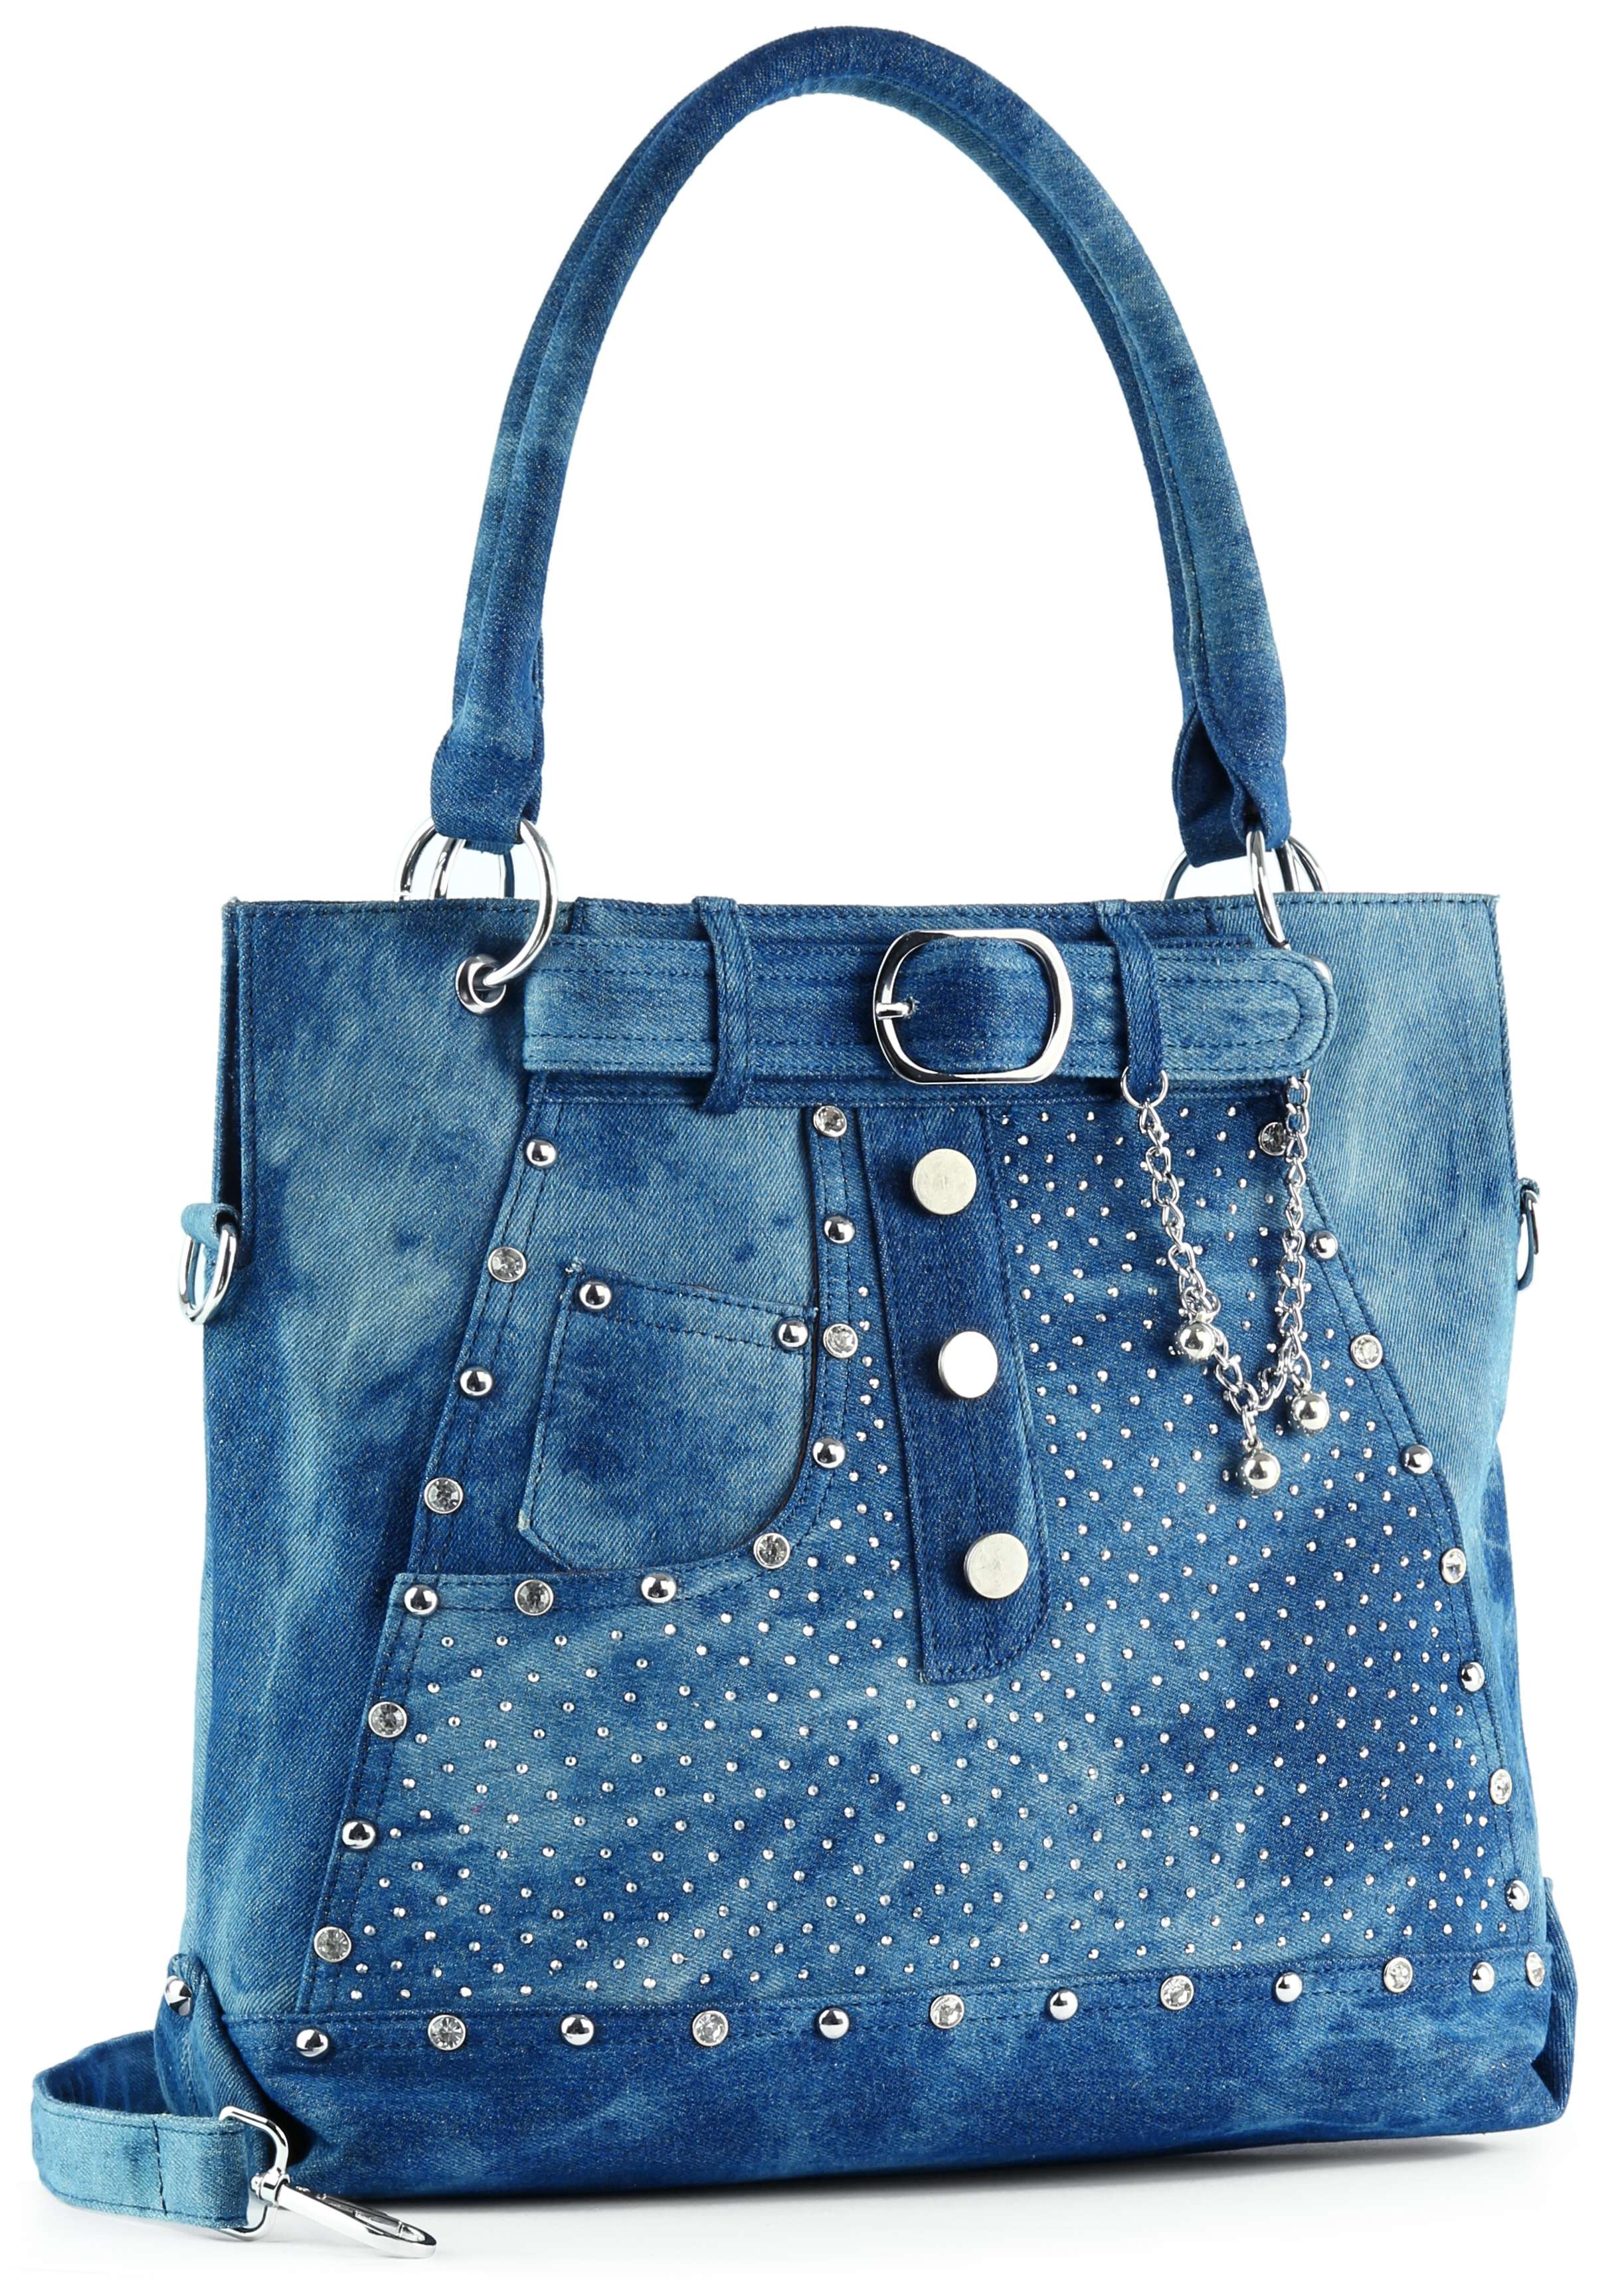 Belted Jean Design Tote Handbag